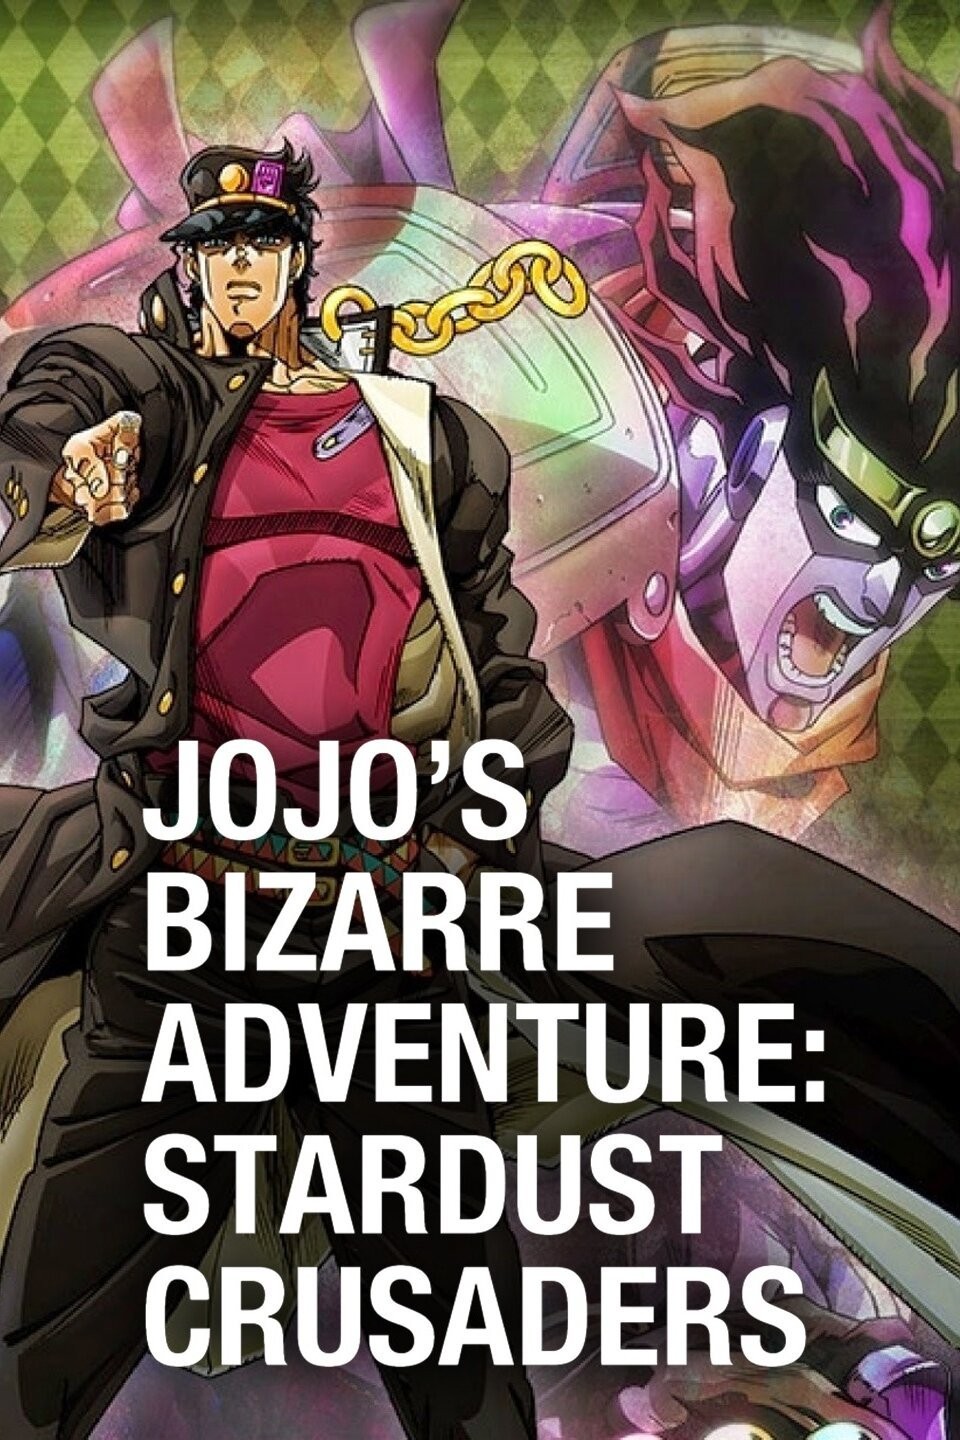 Watch JoJo's Bizarre Adventure: Golden Wind Season 4 Streaming Online